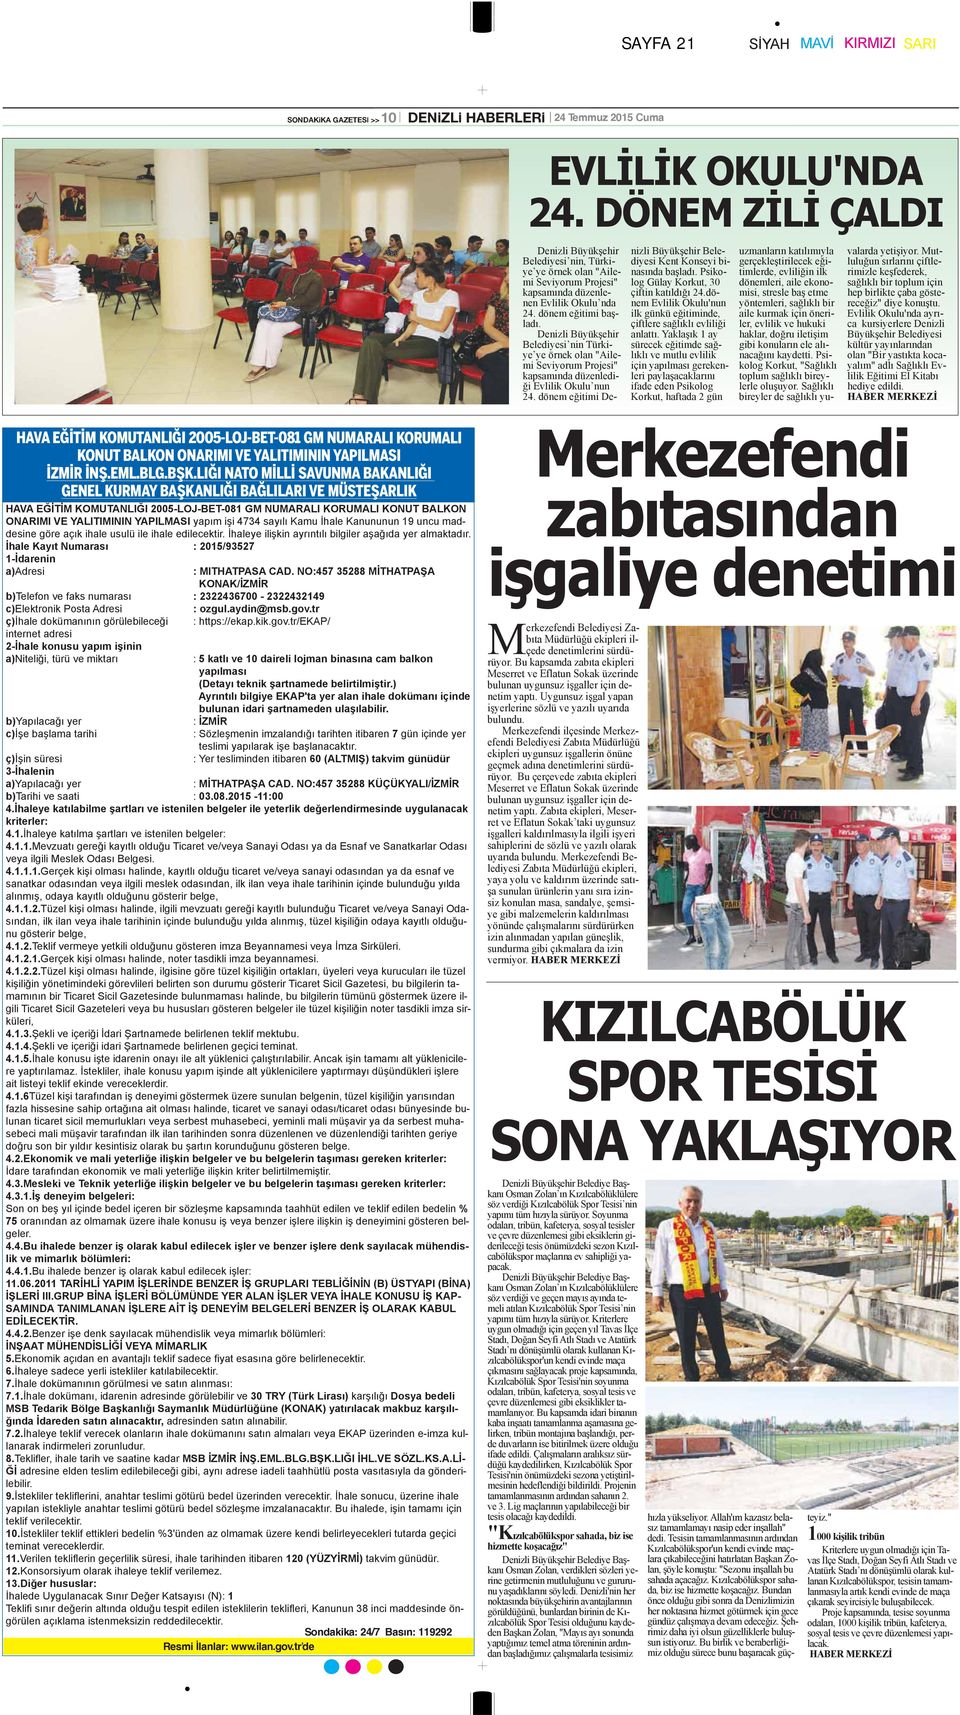 Denizli Büyükşehir Belediyesi nin Türkiye ye örnek olan "Ailemi Seviyorum Projesi" kapsamında düzenlediği Evlilik Okulu nun 24.